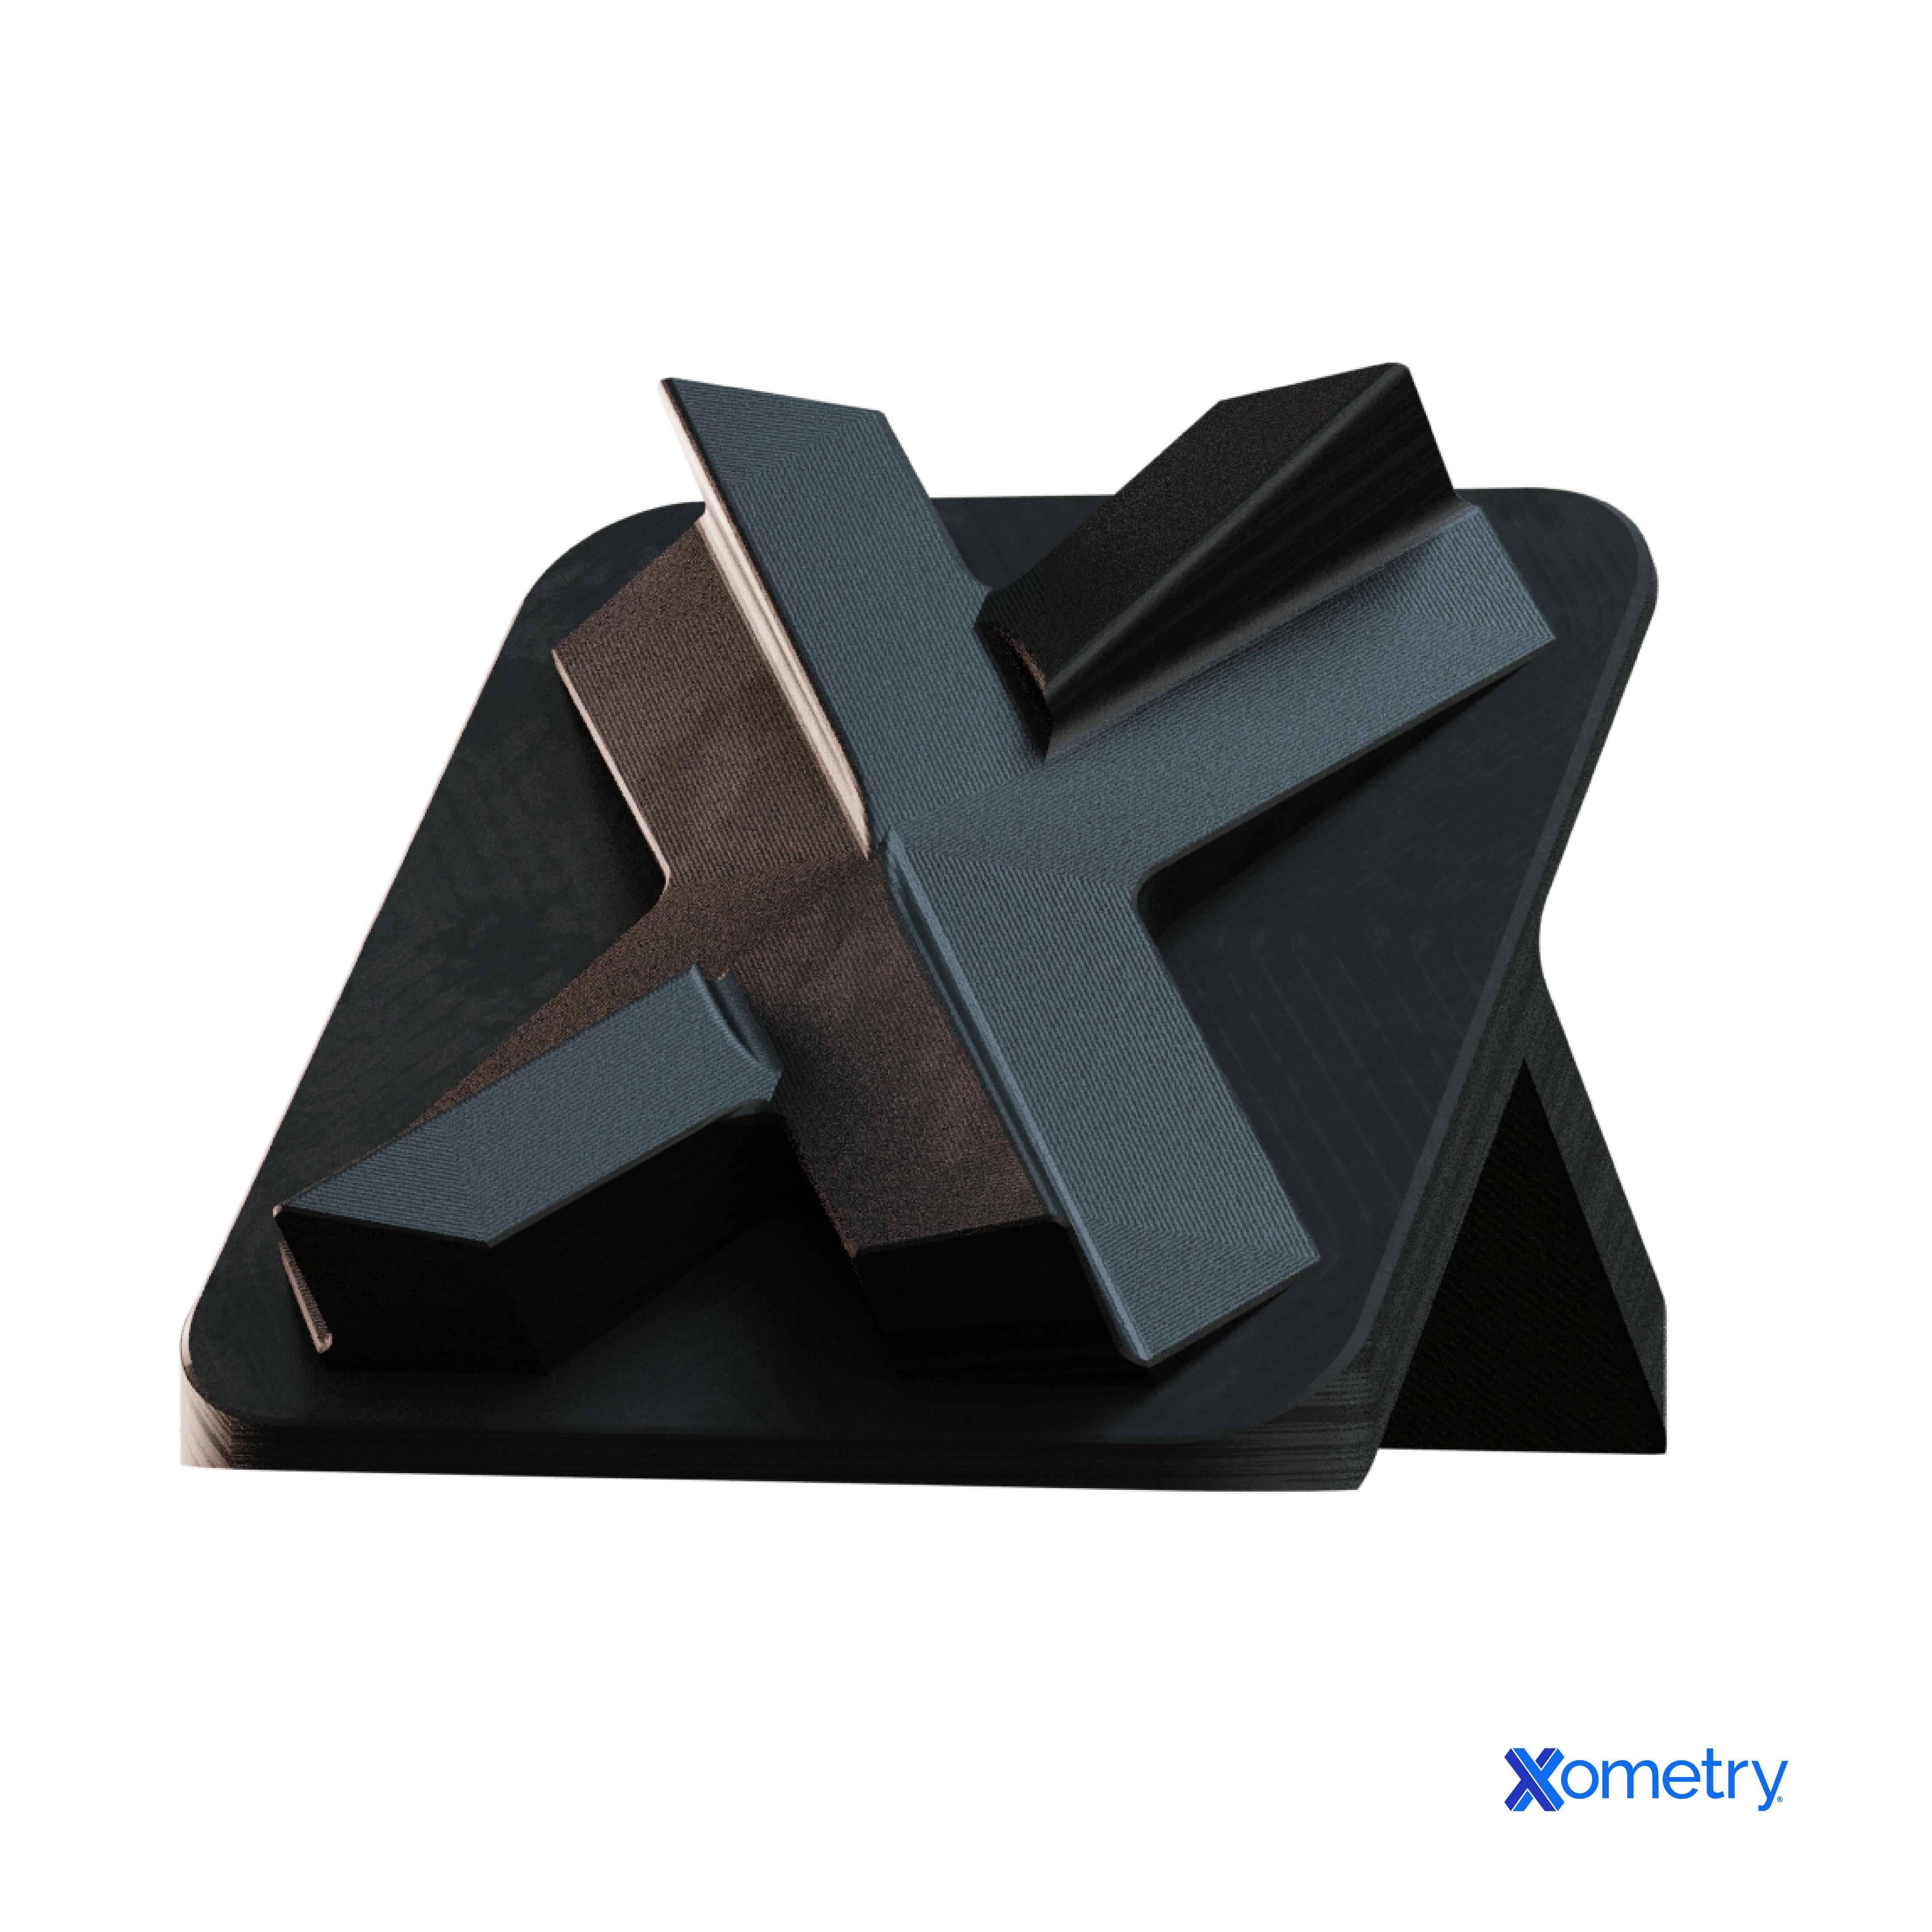 black oxide on a metal X